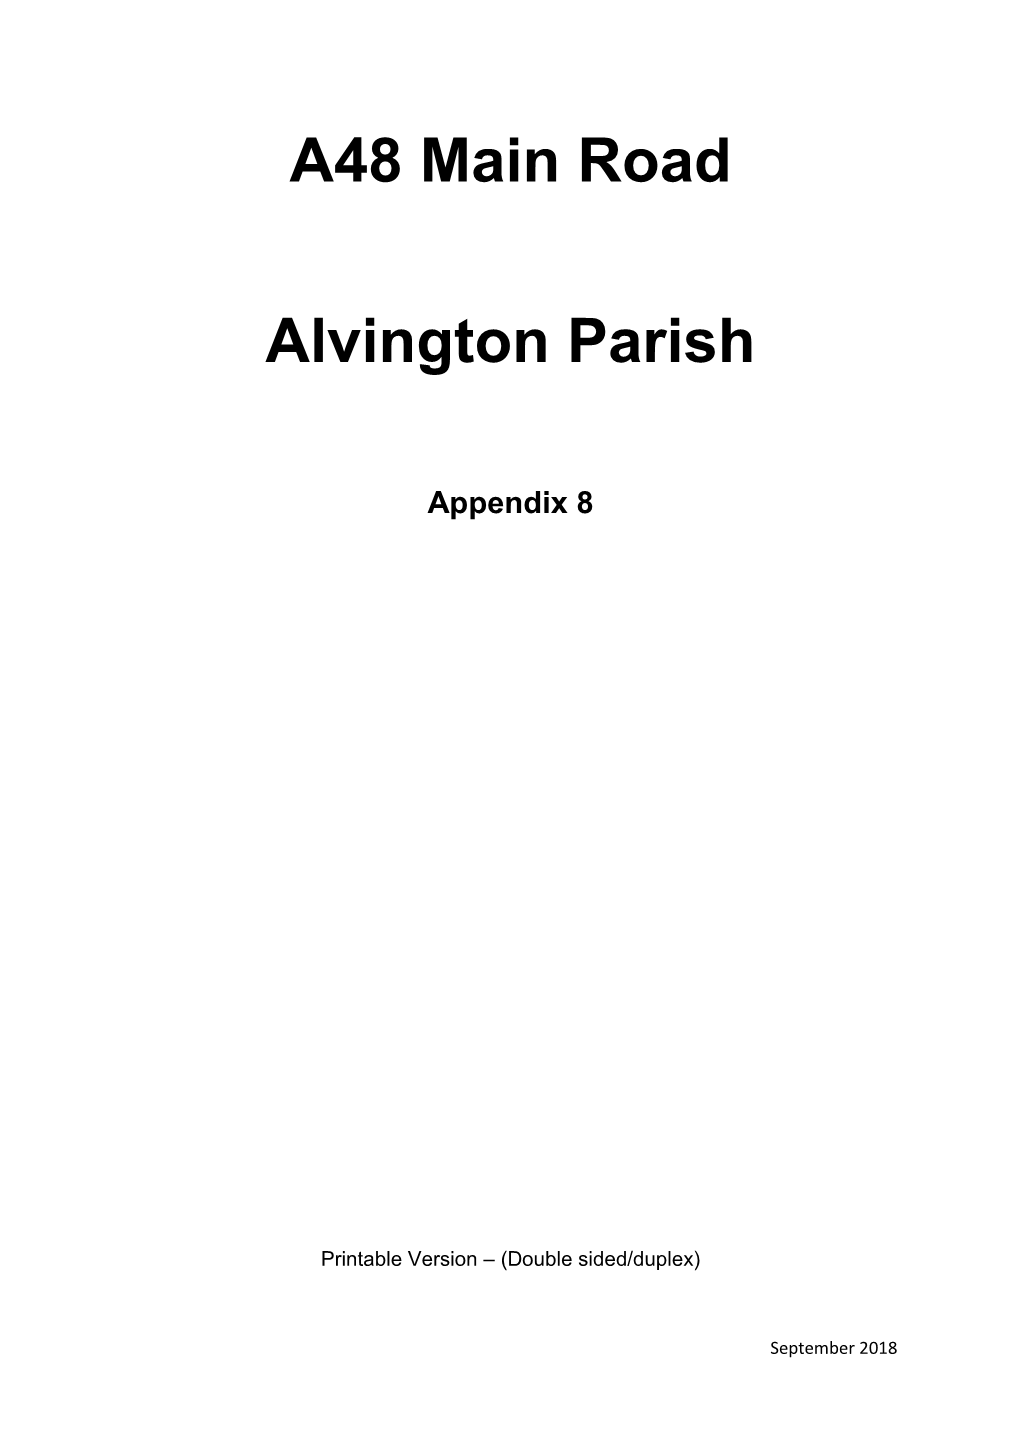 A48 Main Road Alvington Parish